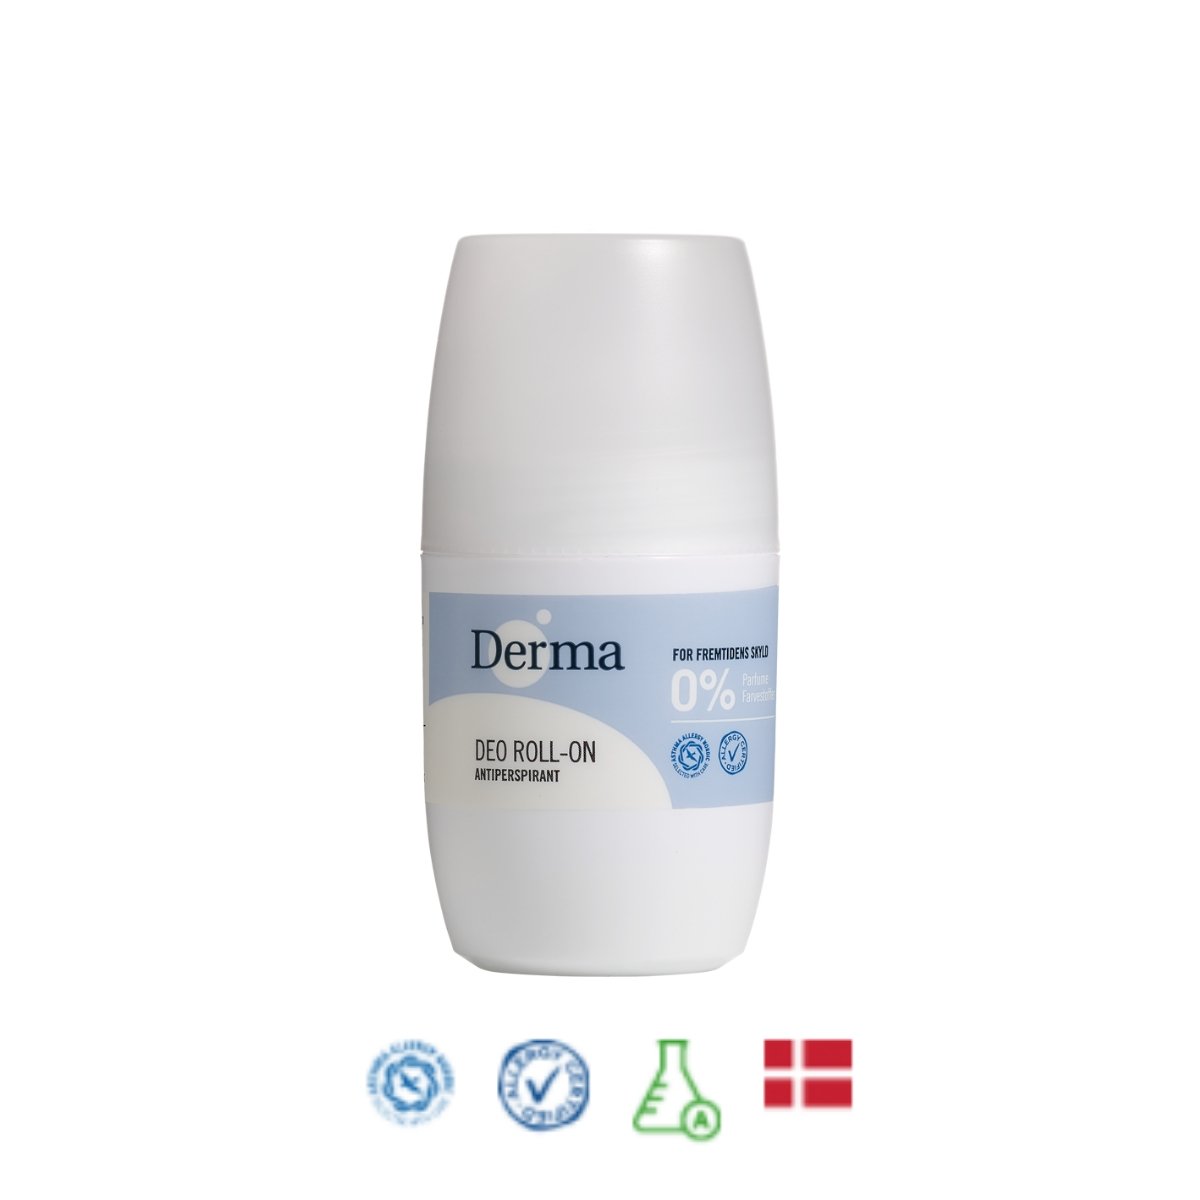 Derma FAMILY Deo Roll-on, 50 ml deodorant Derma   